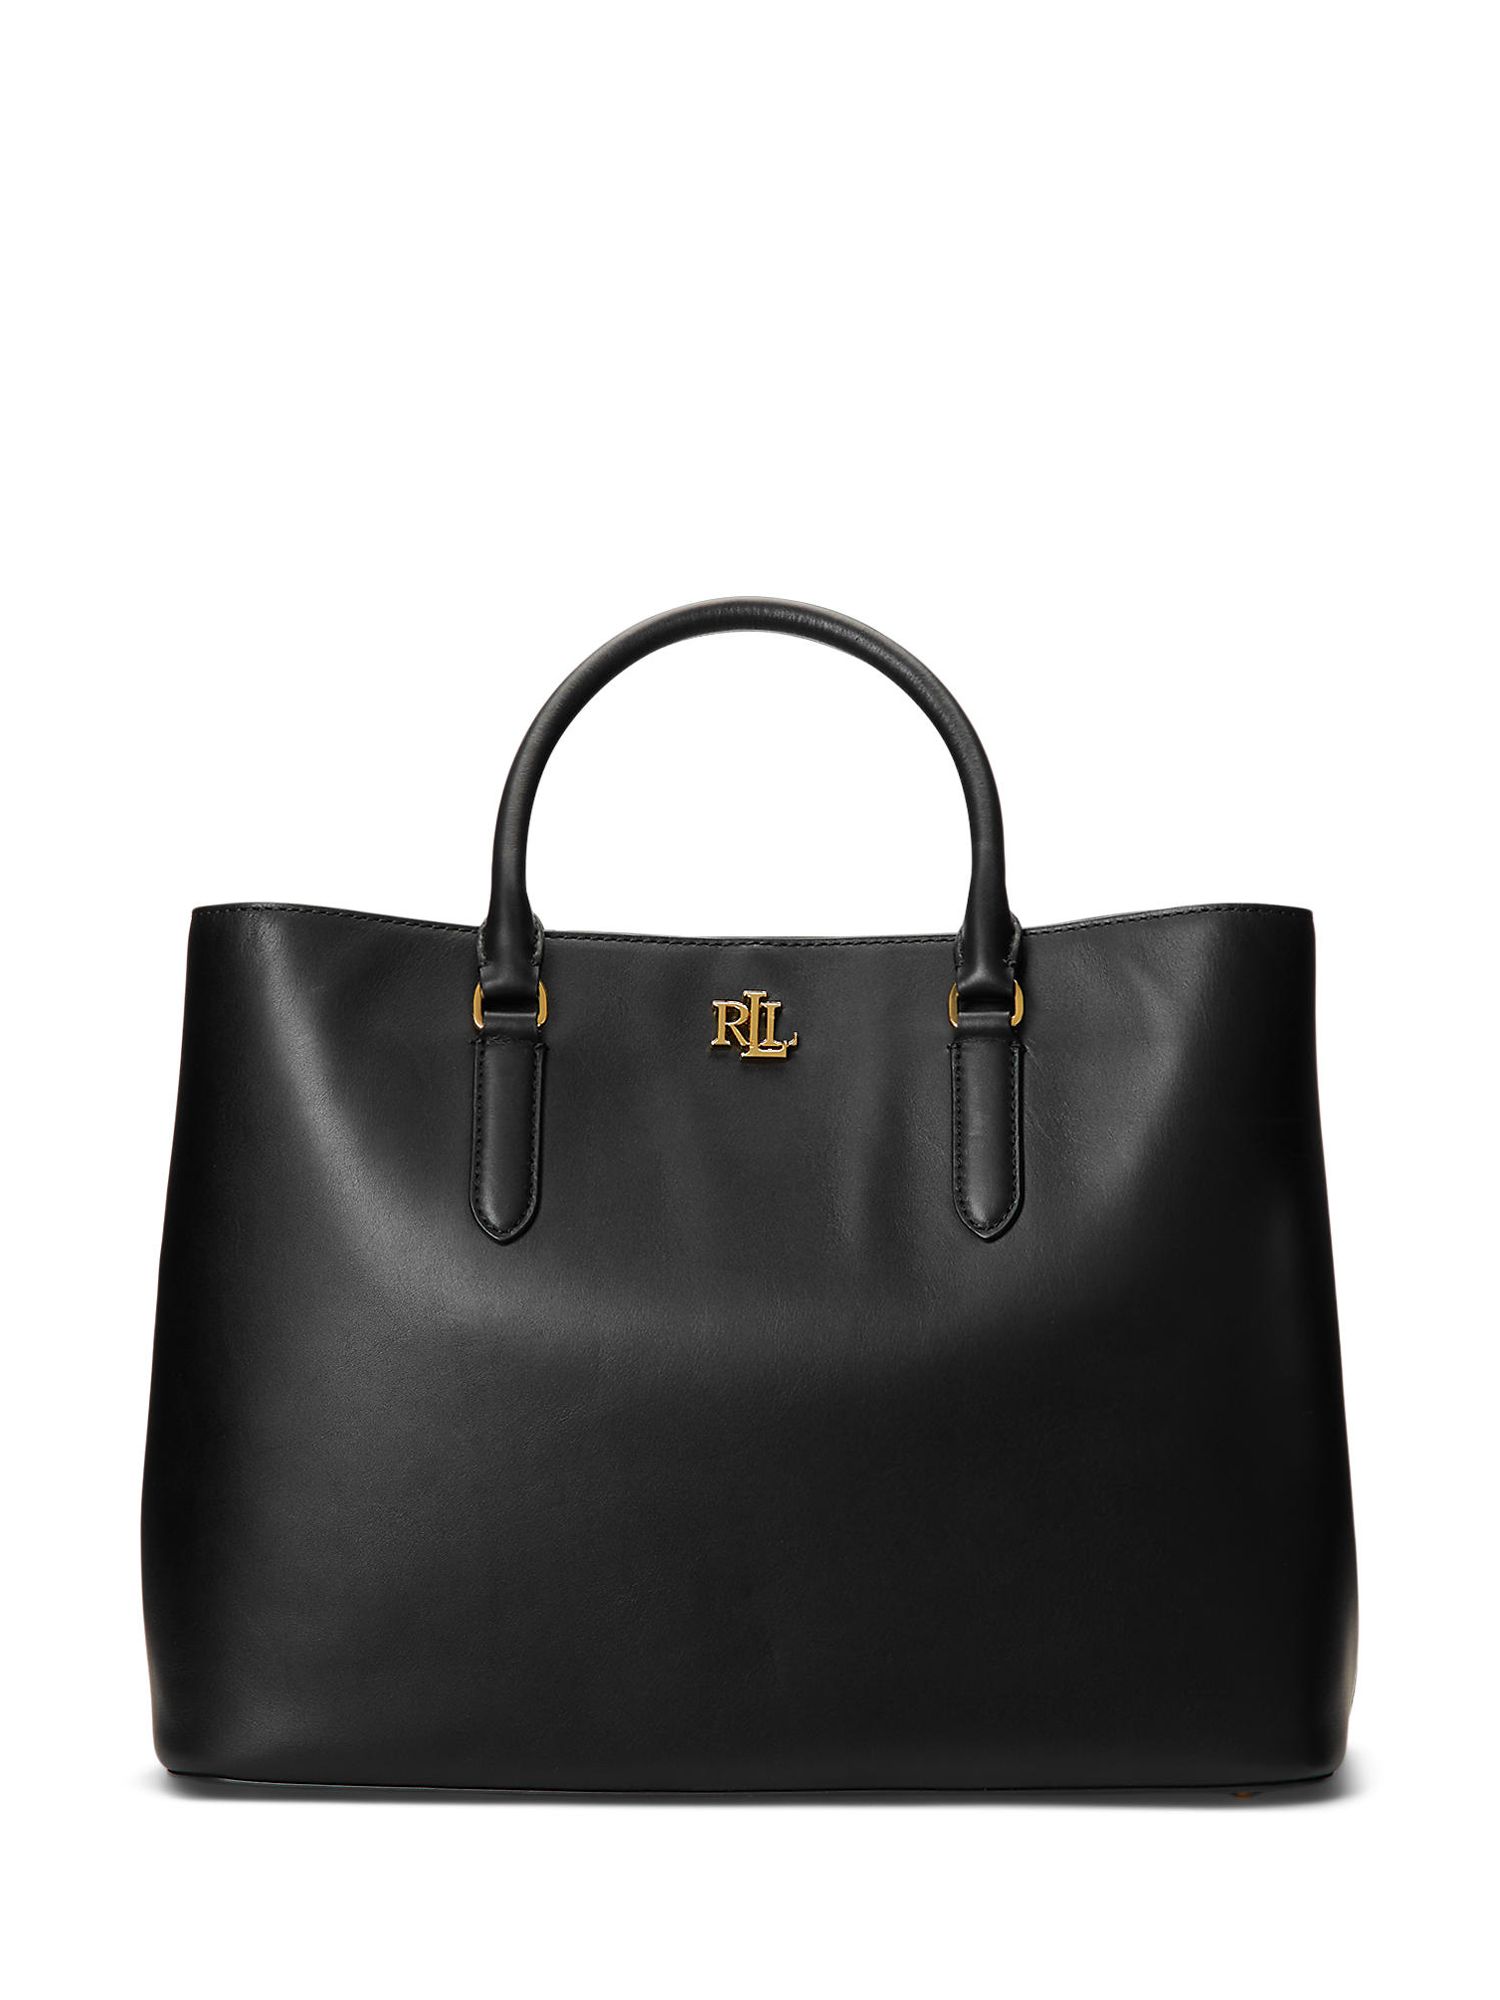 Actualizar 109+ imagen ralph lauren leather handbags